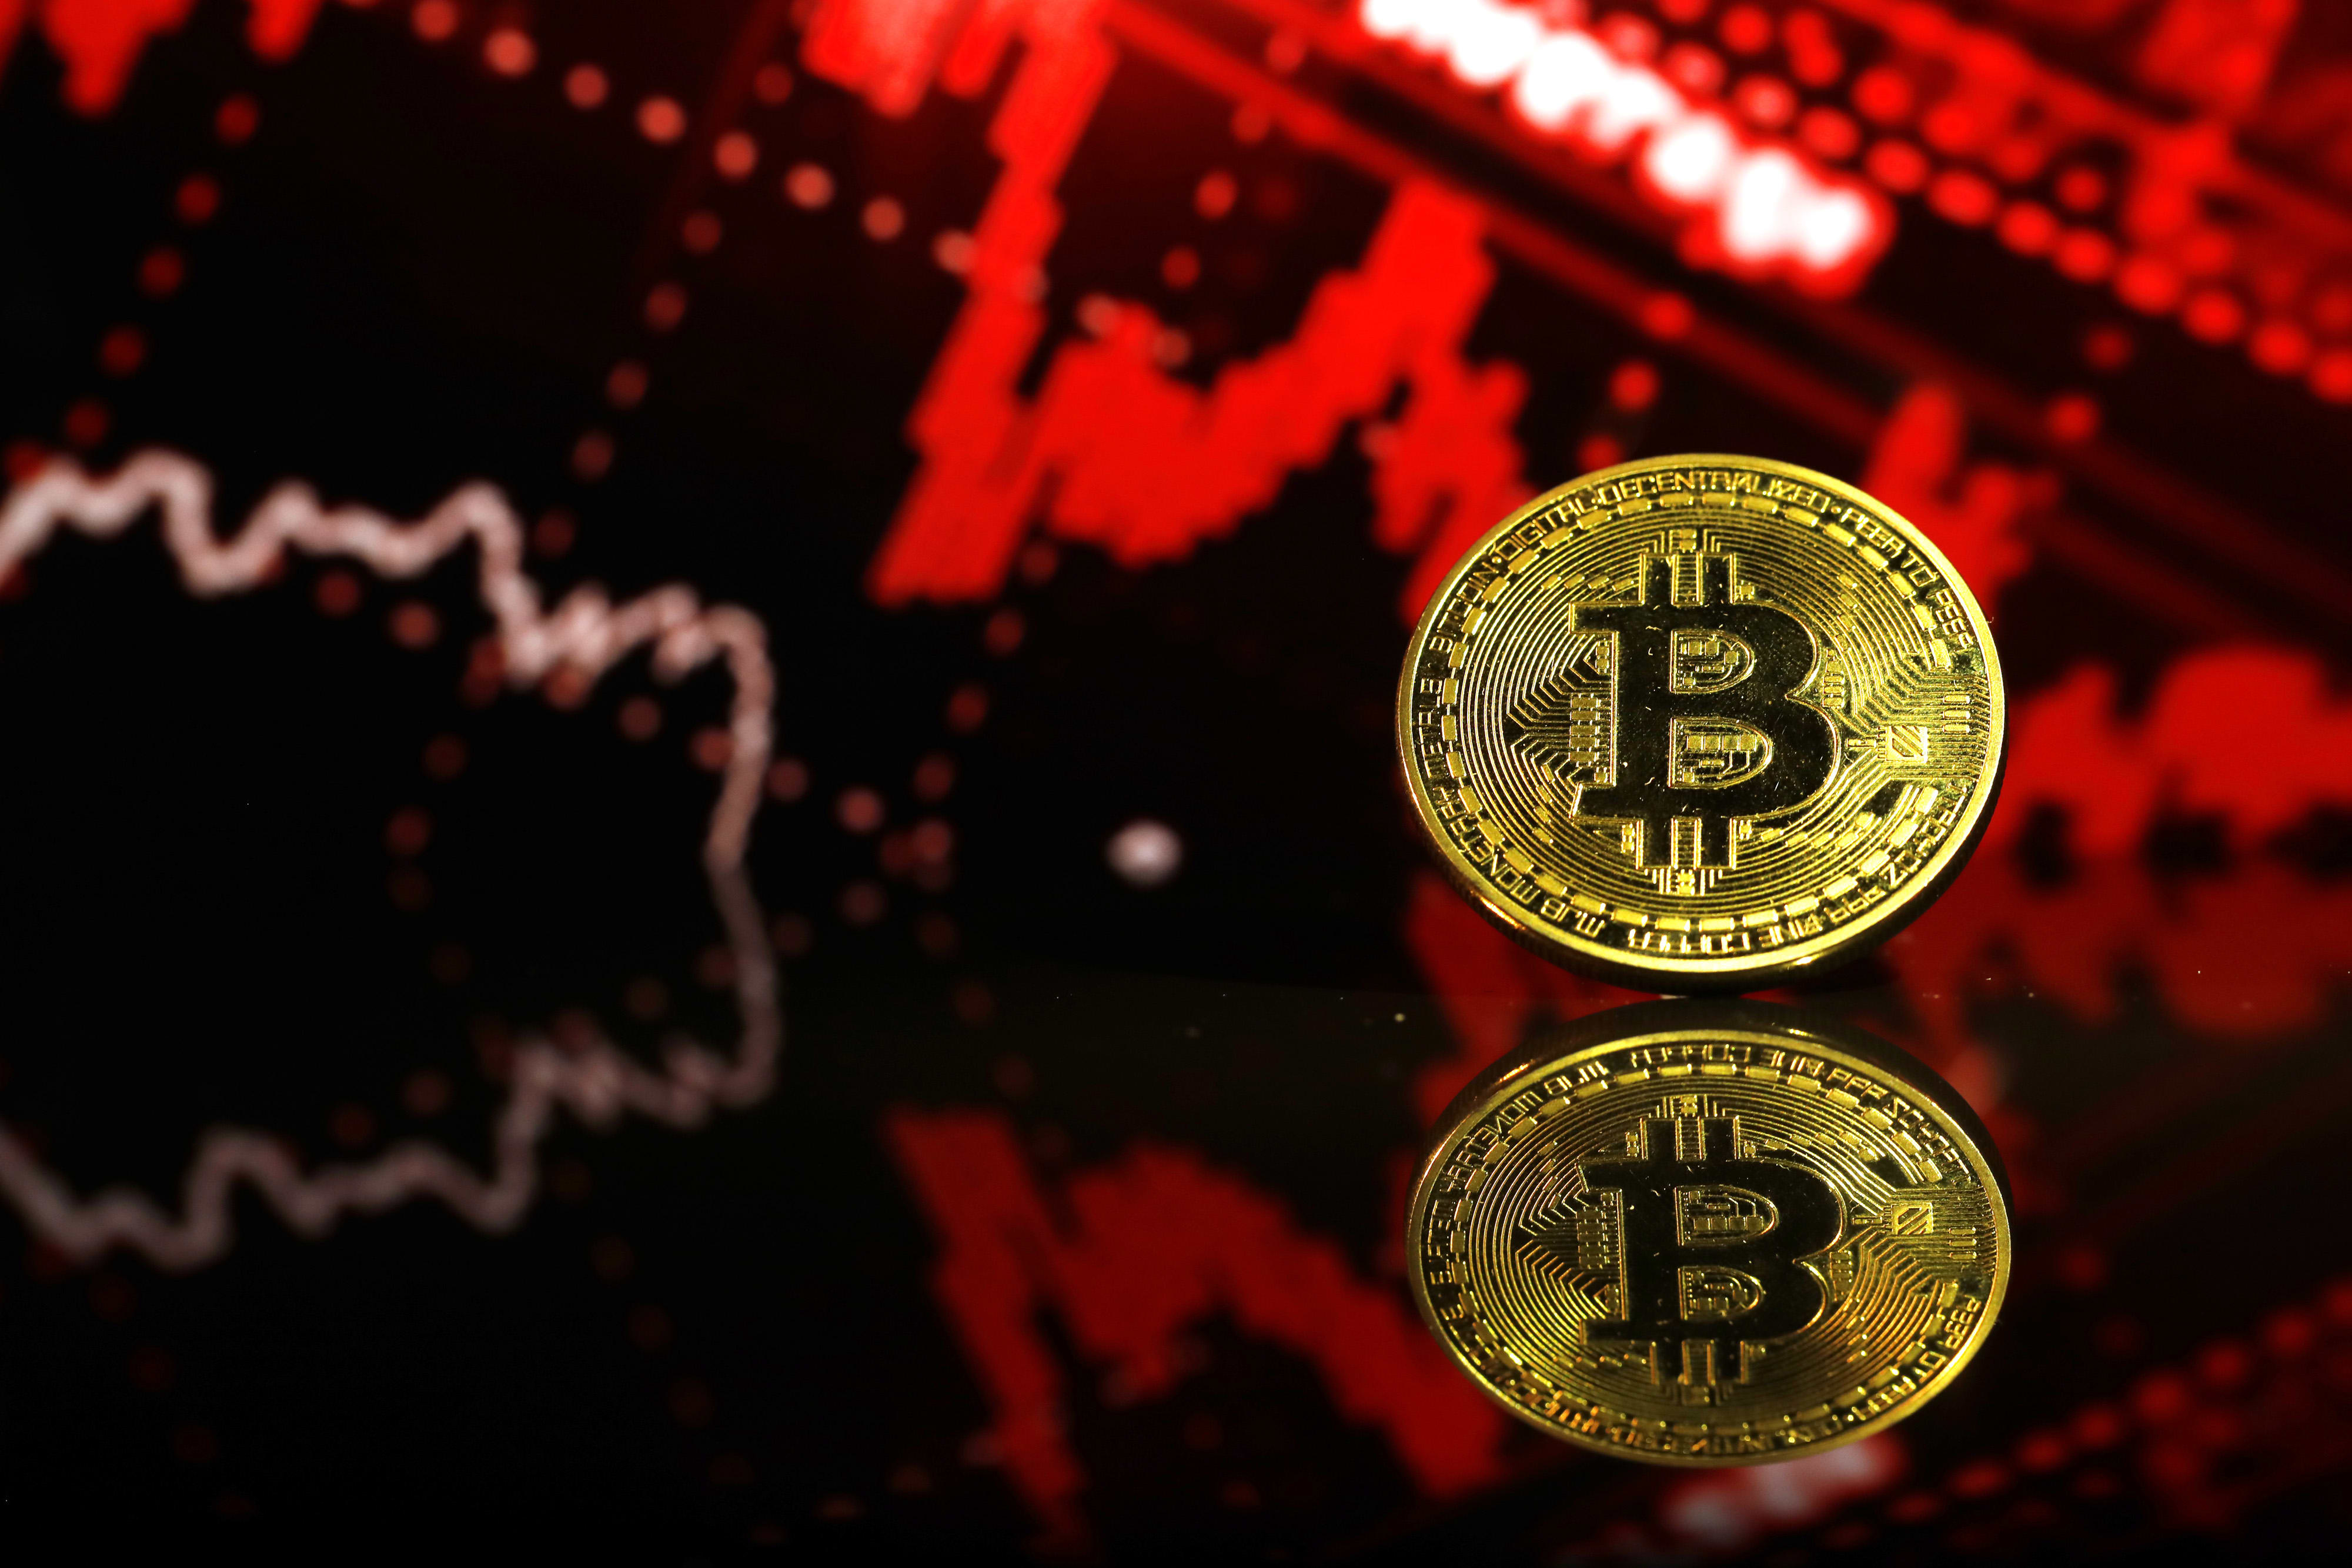 Crypto: Bitcoin (BTC) enters bear market on new Covid variant